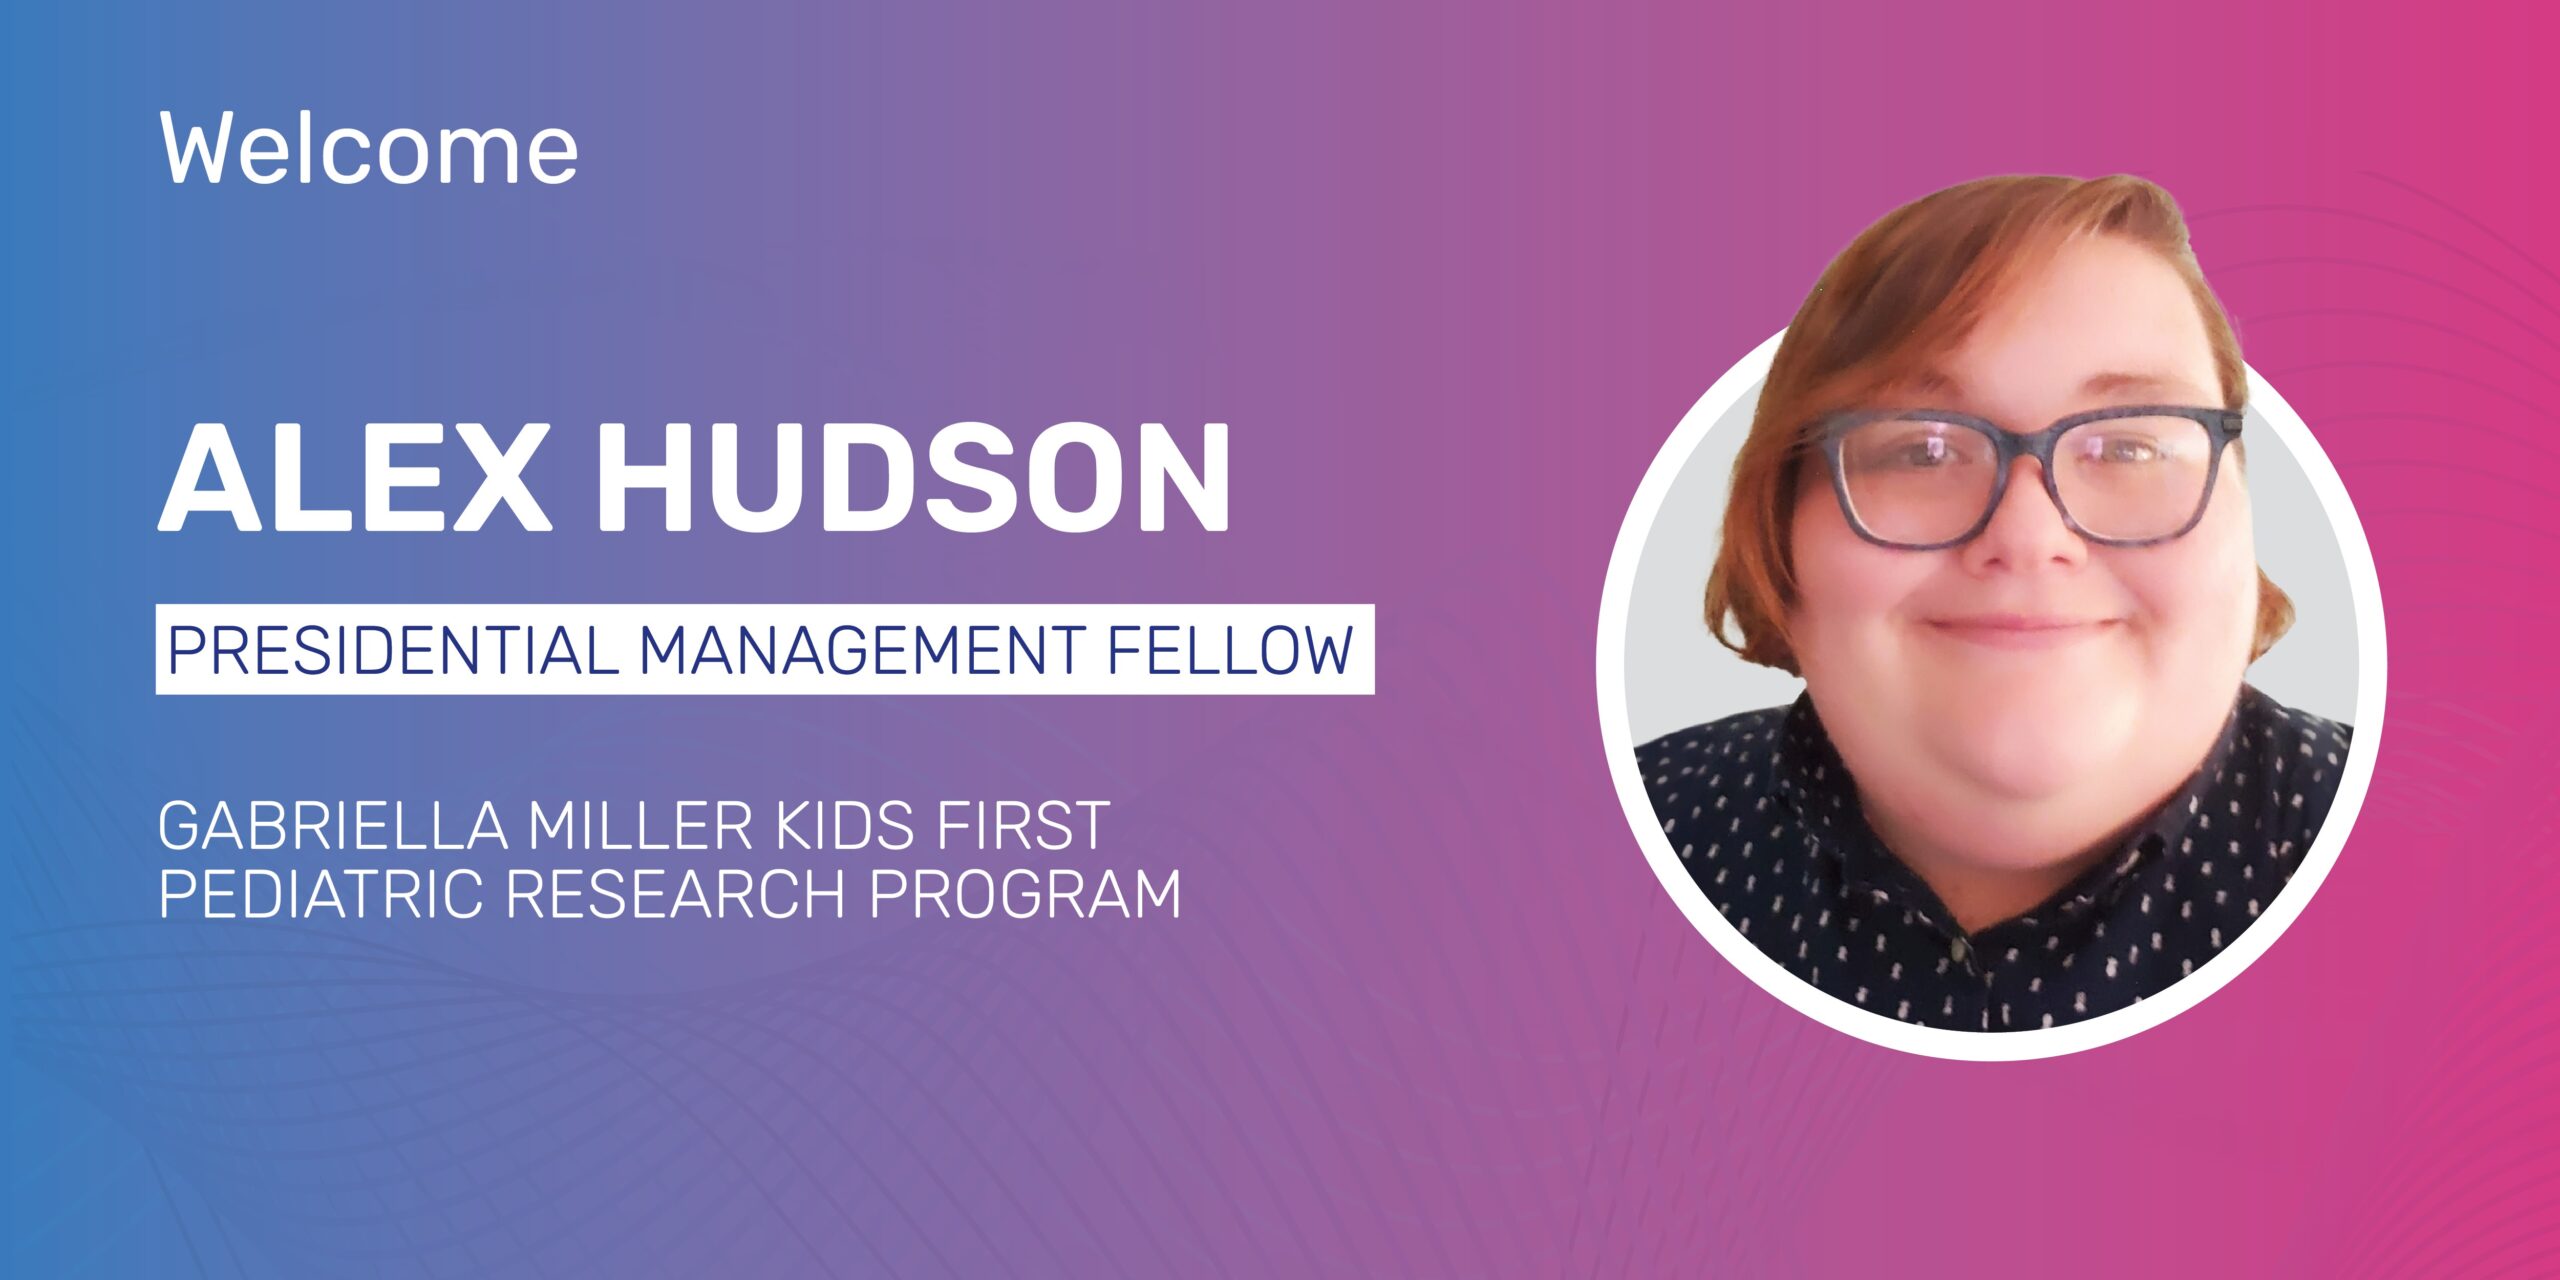 alex hudson: Fusionar ciencia y servicio en el núcleo del programa Kids First